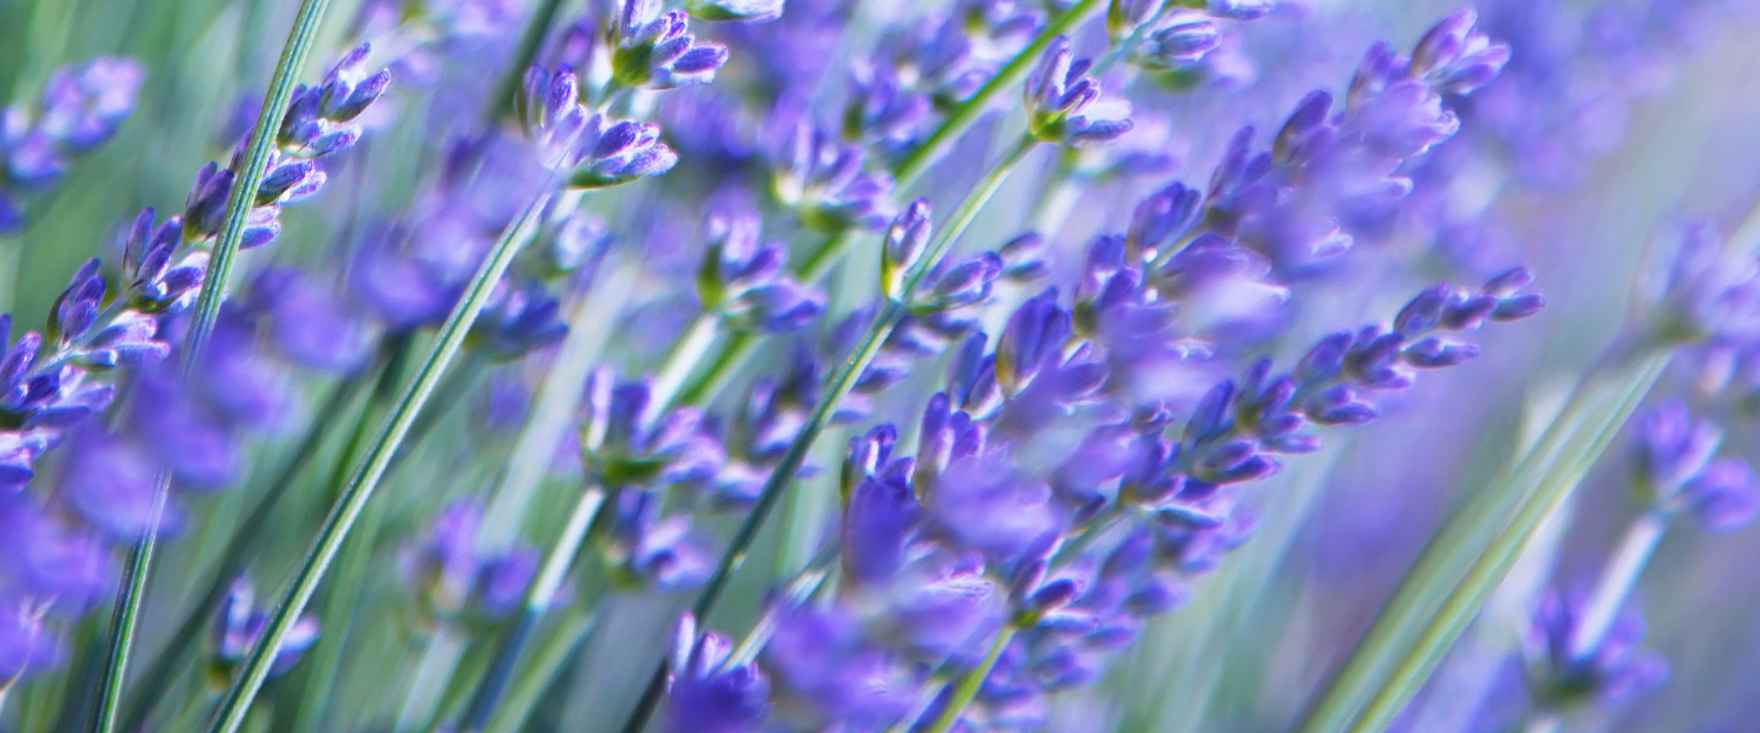 2228-lavendel-blomst-lilla-blaa-staengler-2880x1200